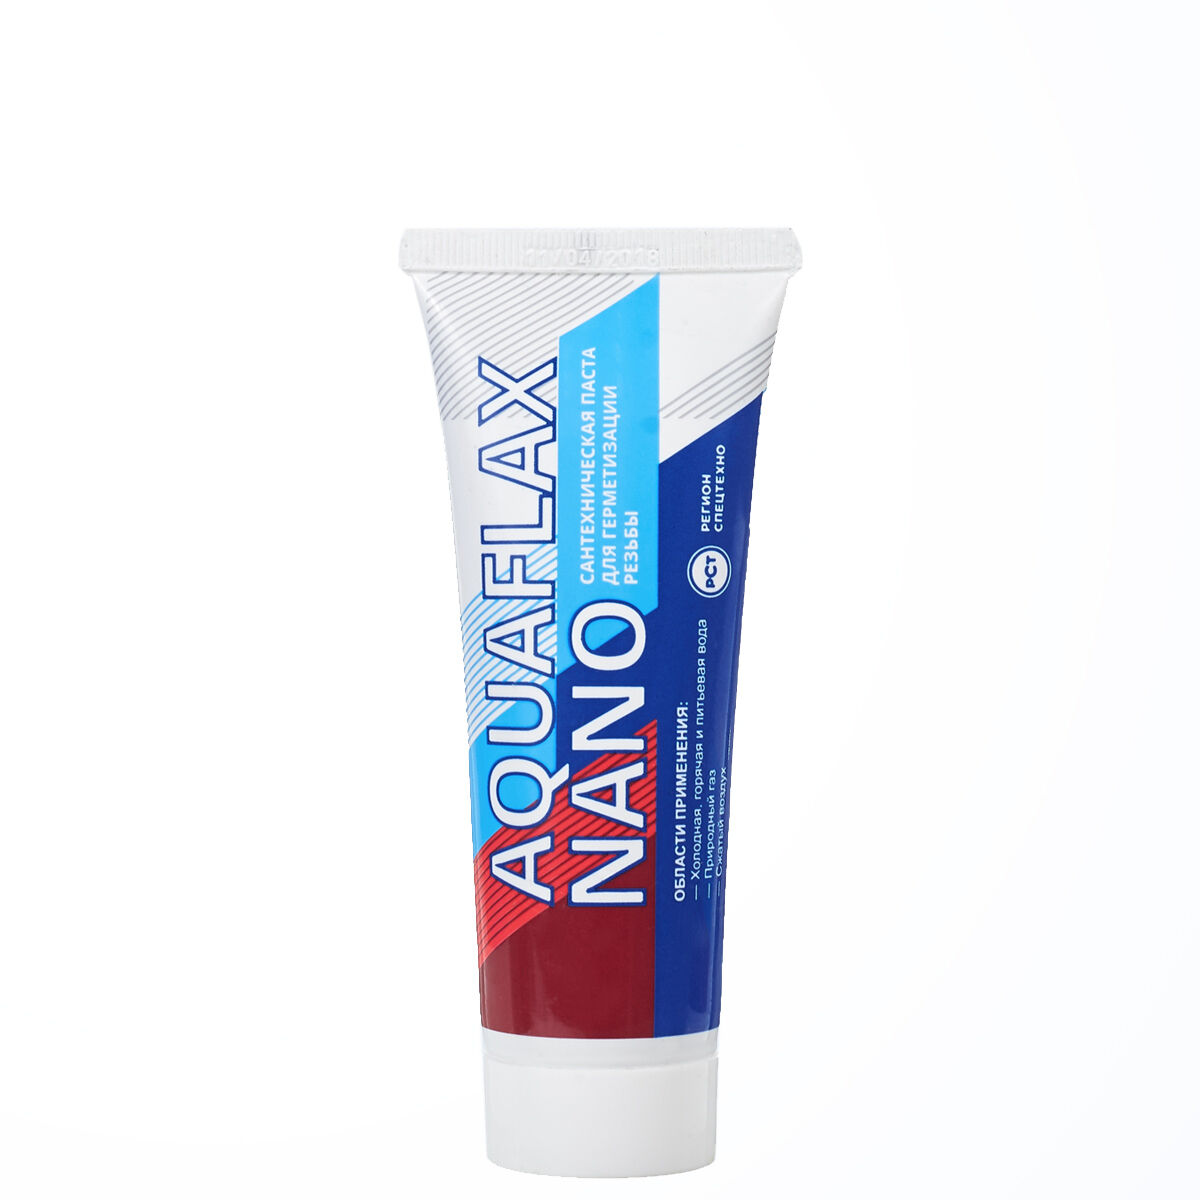 Сантехническая паста для льна Aquaflax NANO, тюбик 80гр. 04041